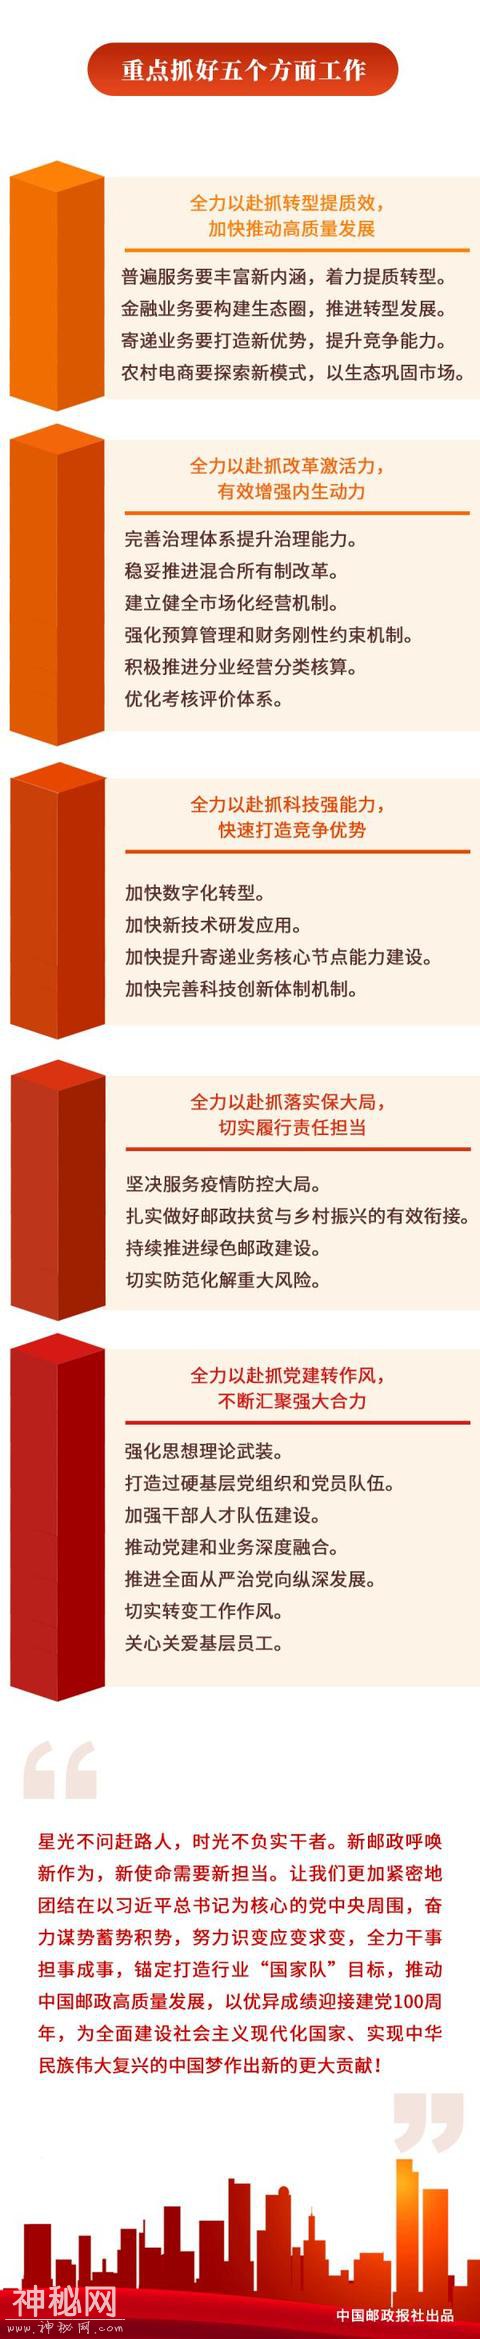 一图看懂中国邮政集团为什么不会倒闭-6.jpg